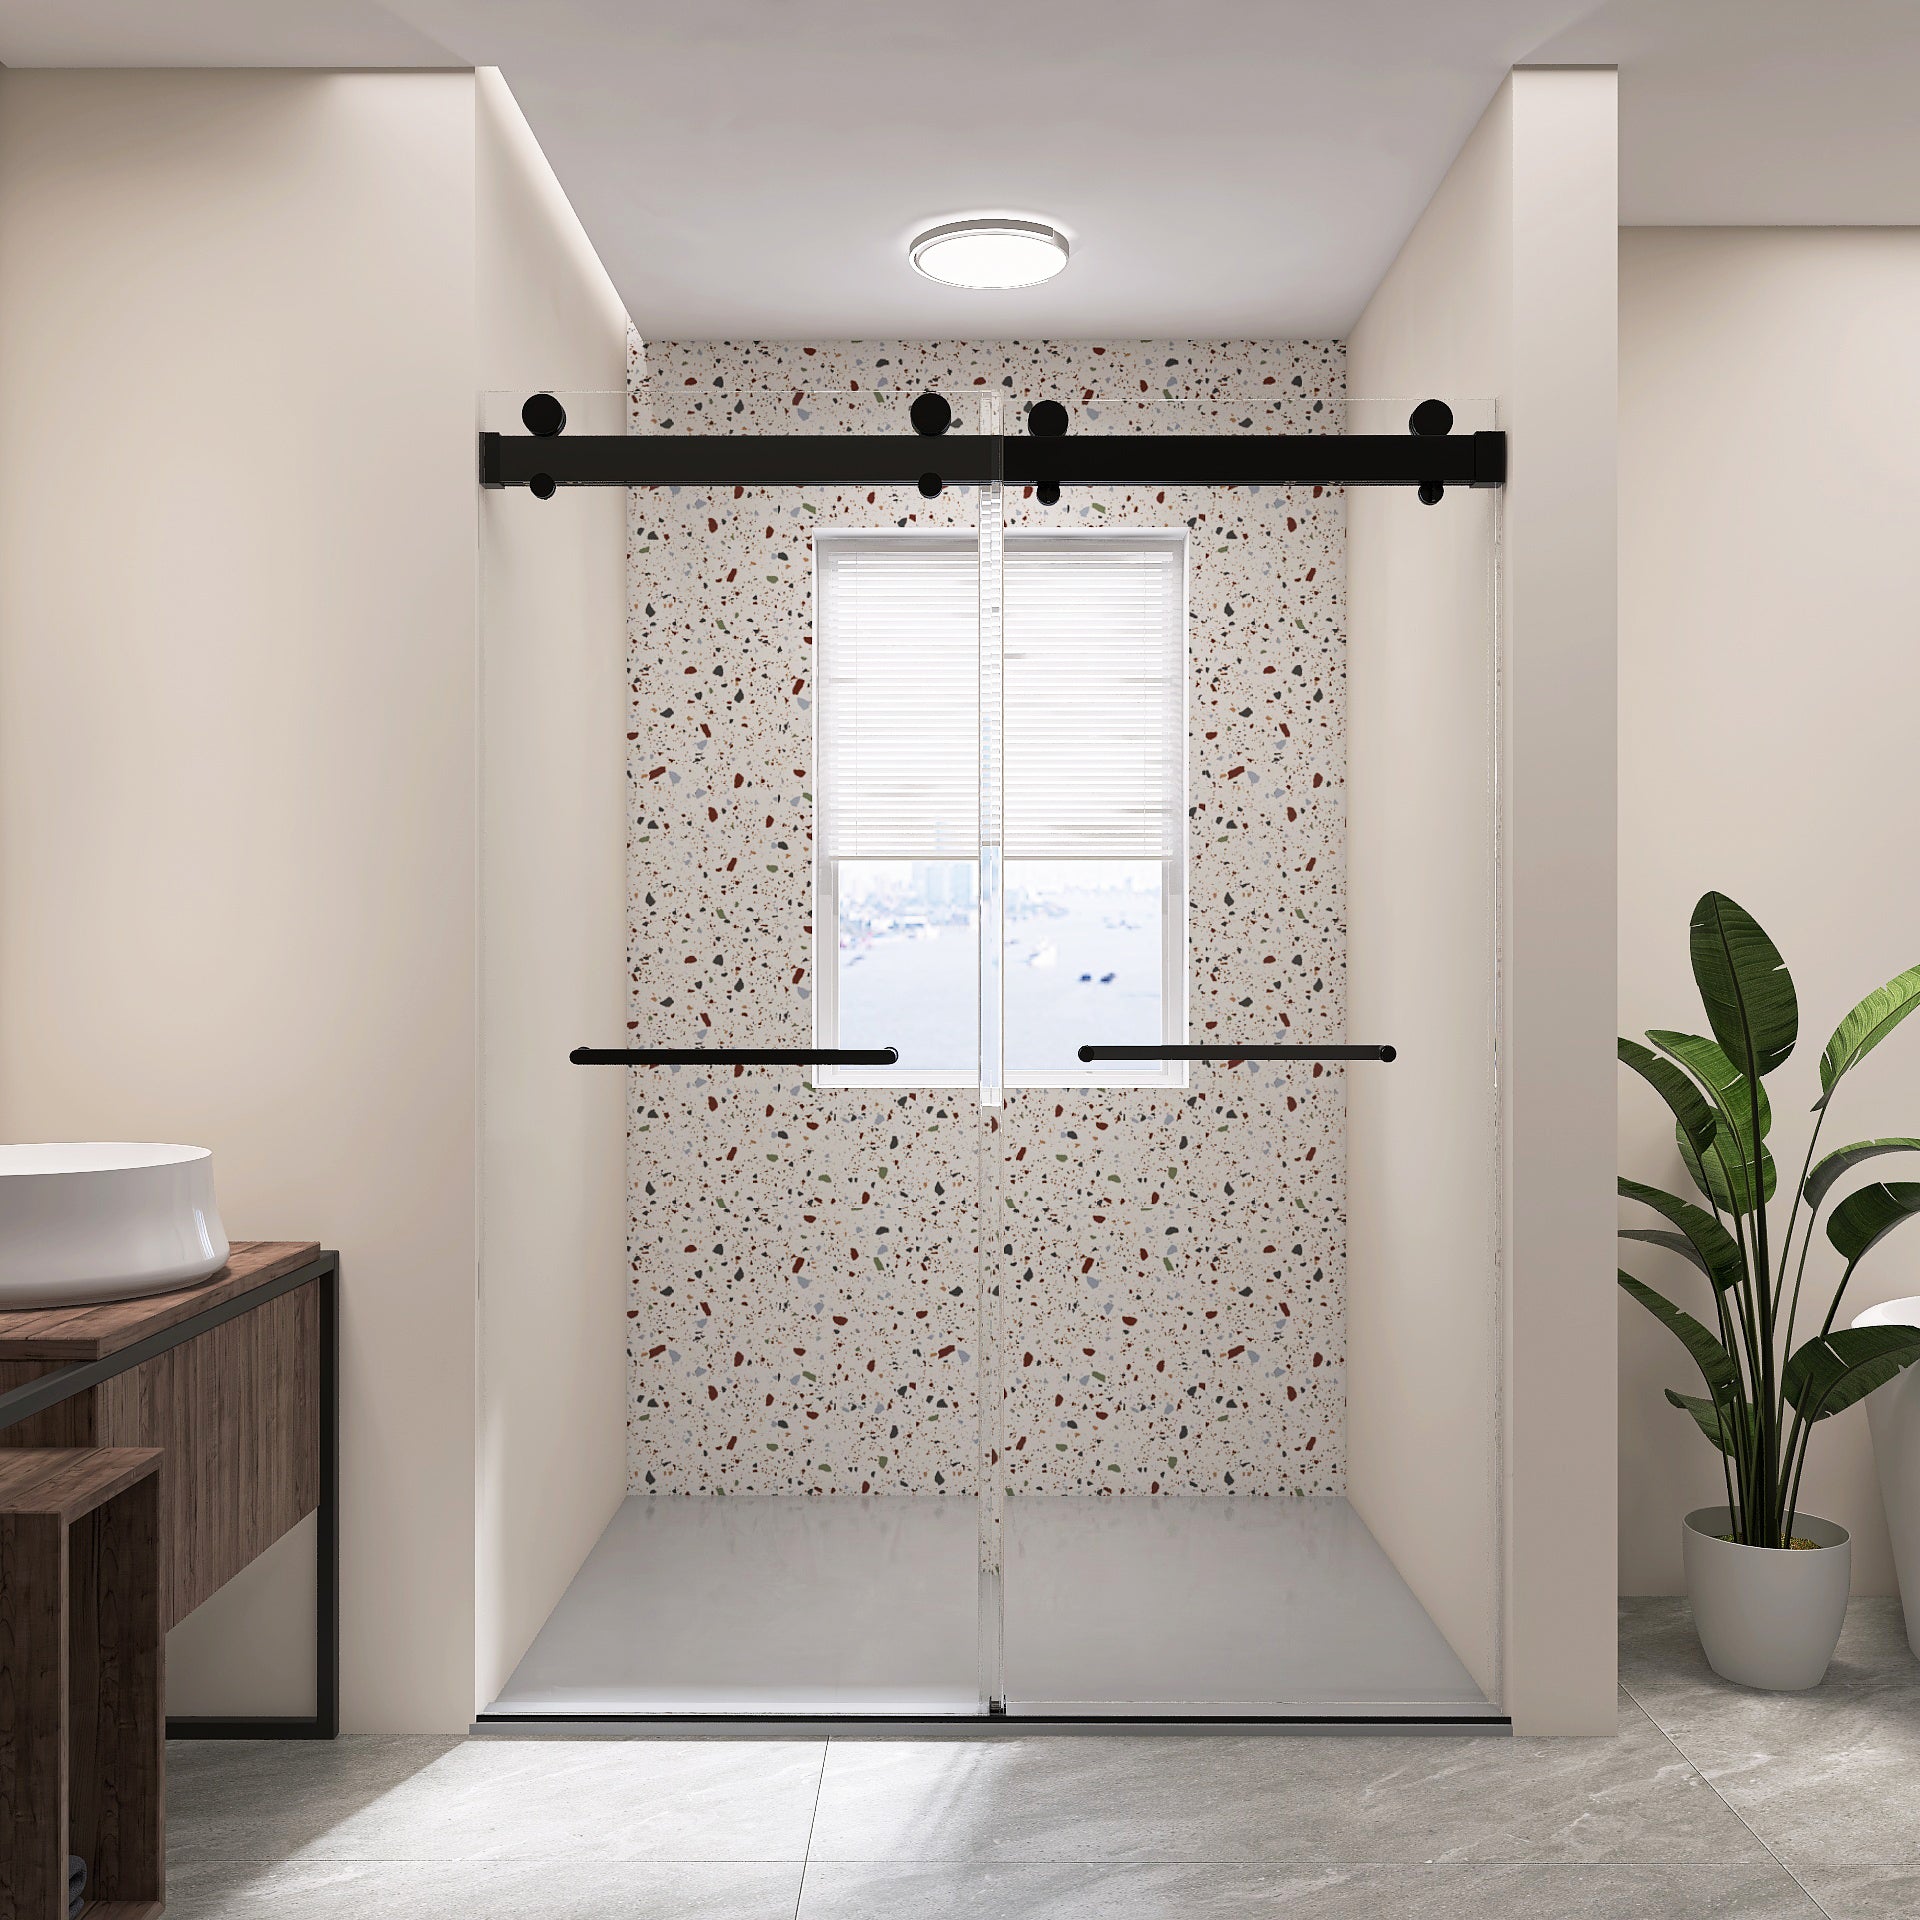 Frameless Double Sliding Shower, 57" 60" Width, 79" matte black-bathroom-modern-glass